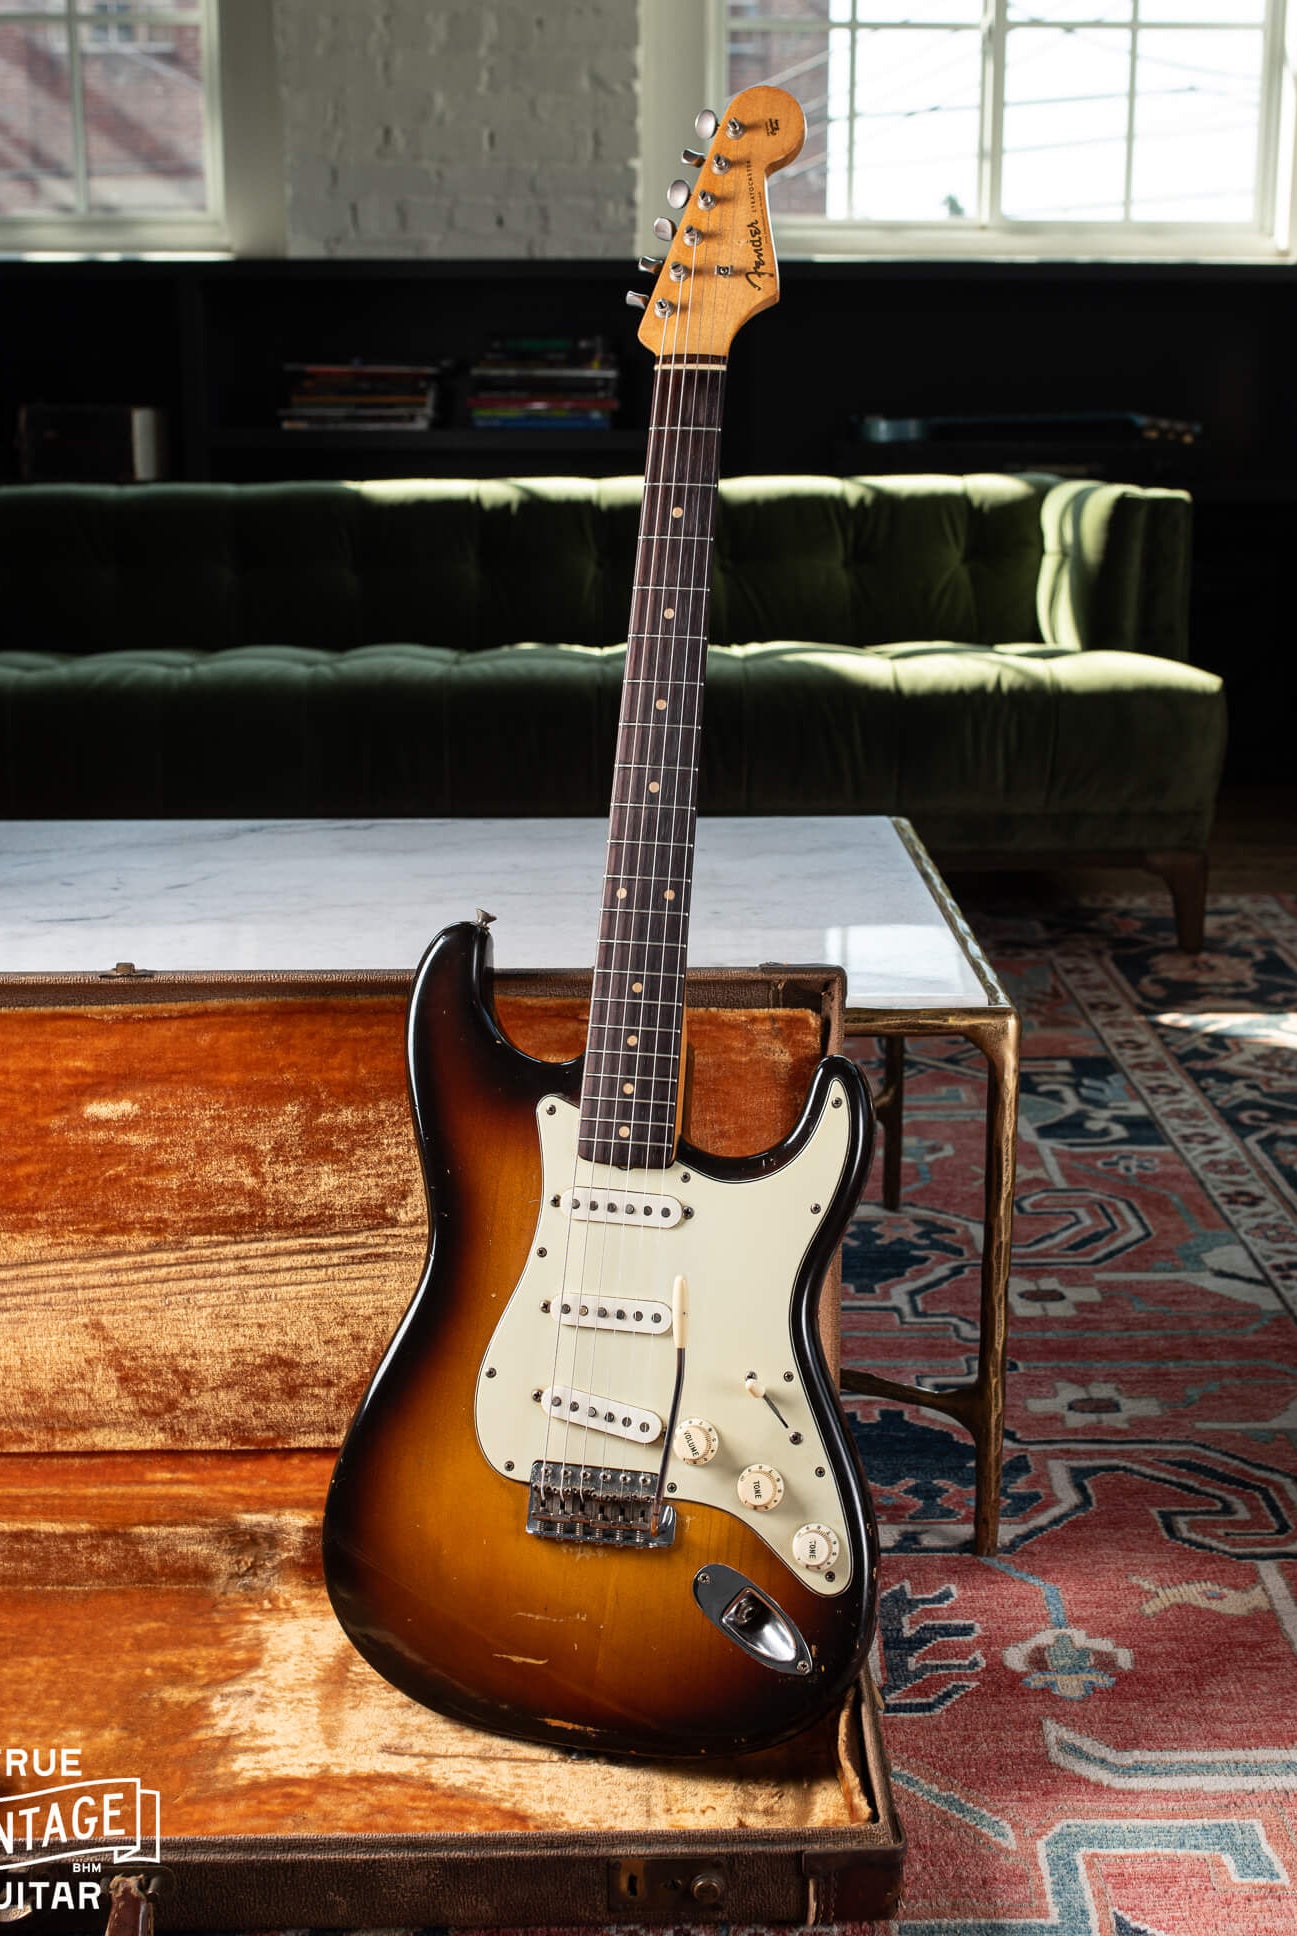 Fender Stratocaster 1959 guitar